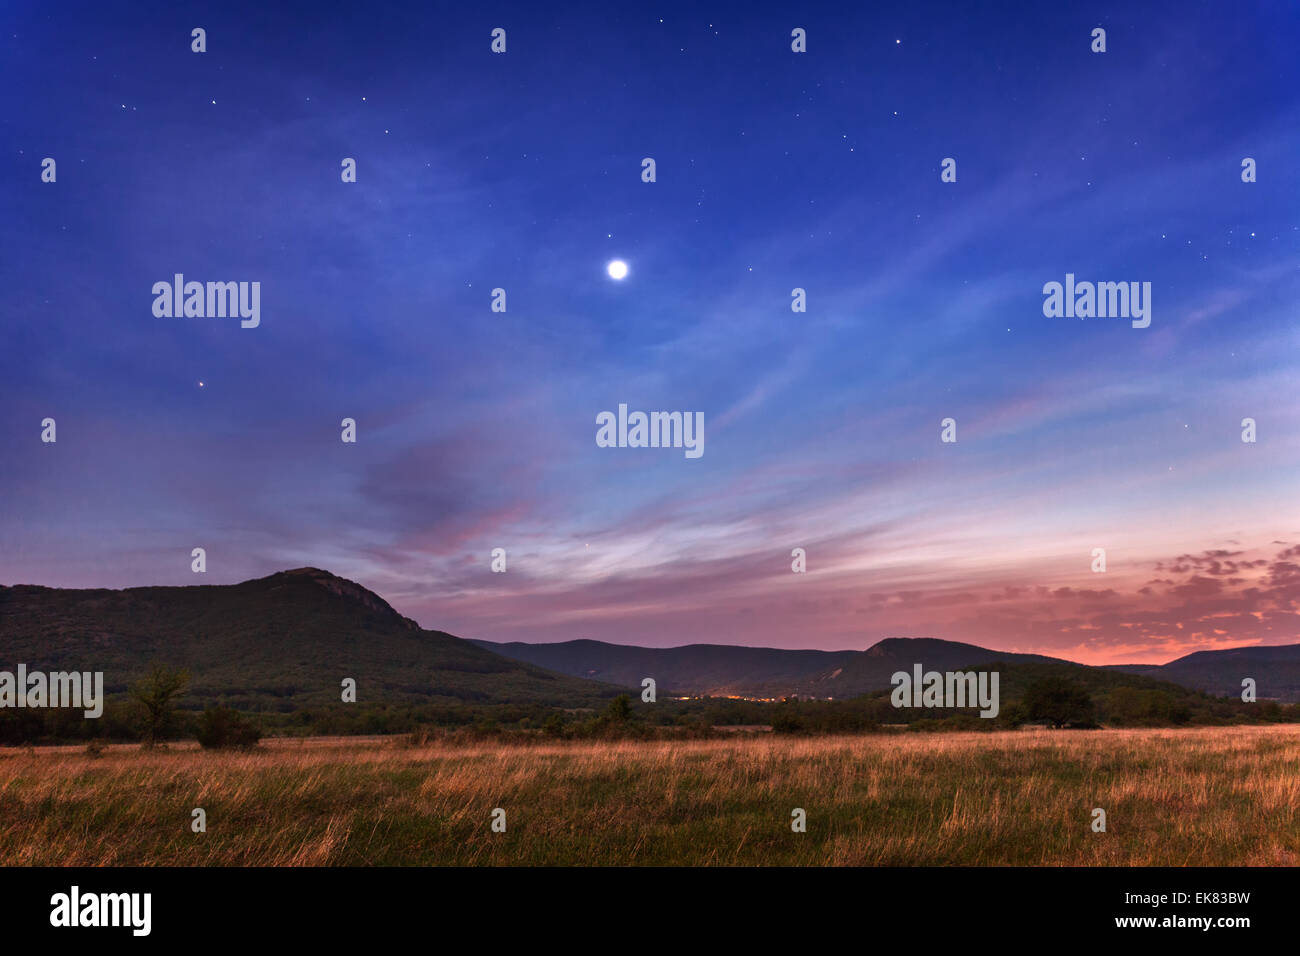 Bello cielo nocturno con las estrellas y las nubes. Primavera en Crimea Foto de stock